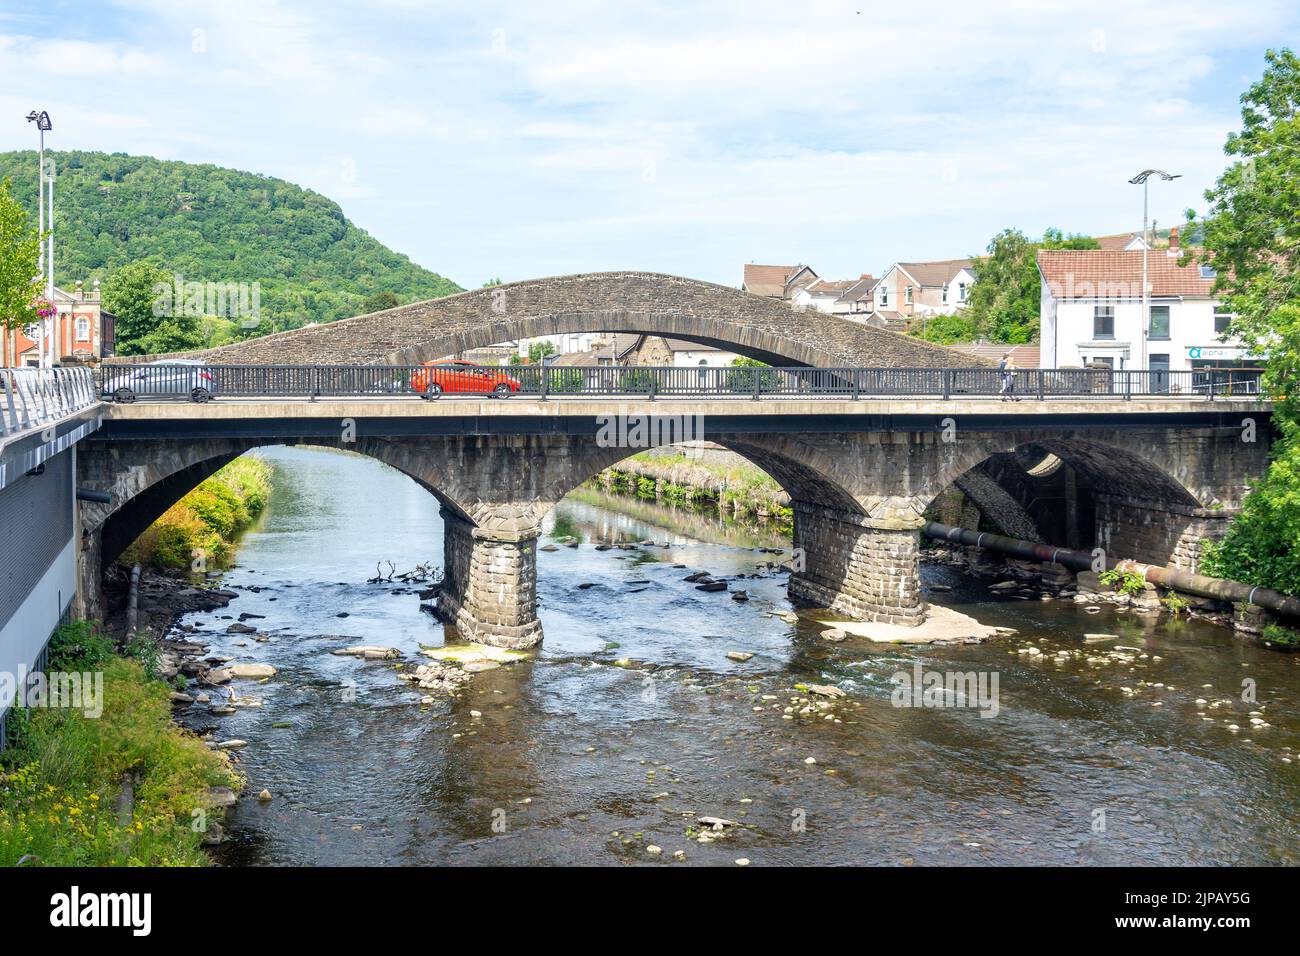 Puente Viejo (Yr Hen Bont) y puente Victoria sobre el río Taff, Pontypridd, Rhondda Cynon Taf, Gales (Cymru), Reino Unido Foto de stock